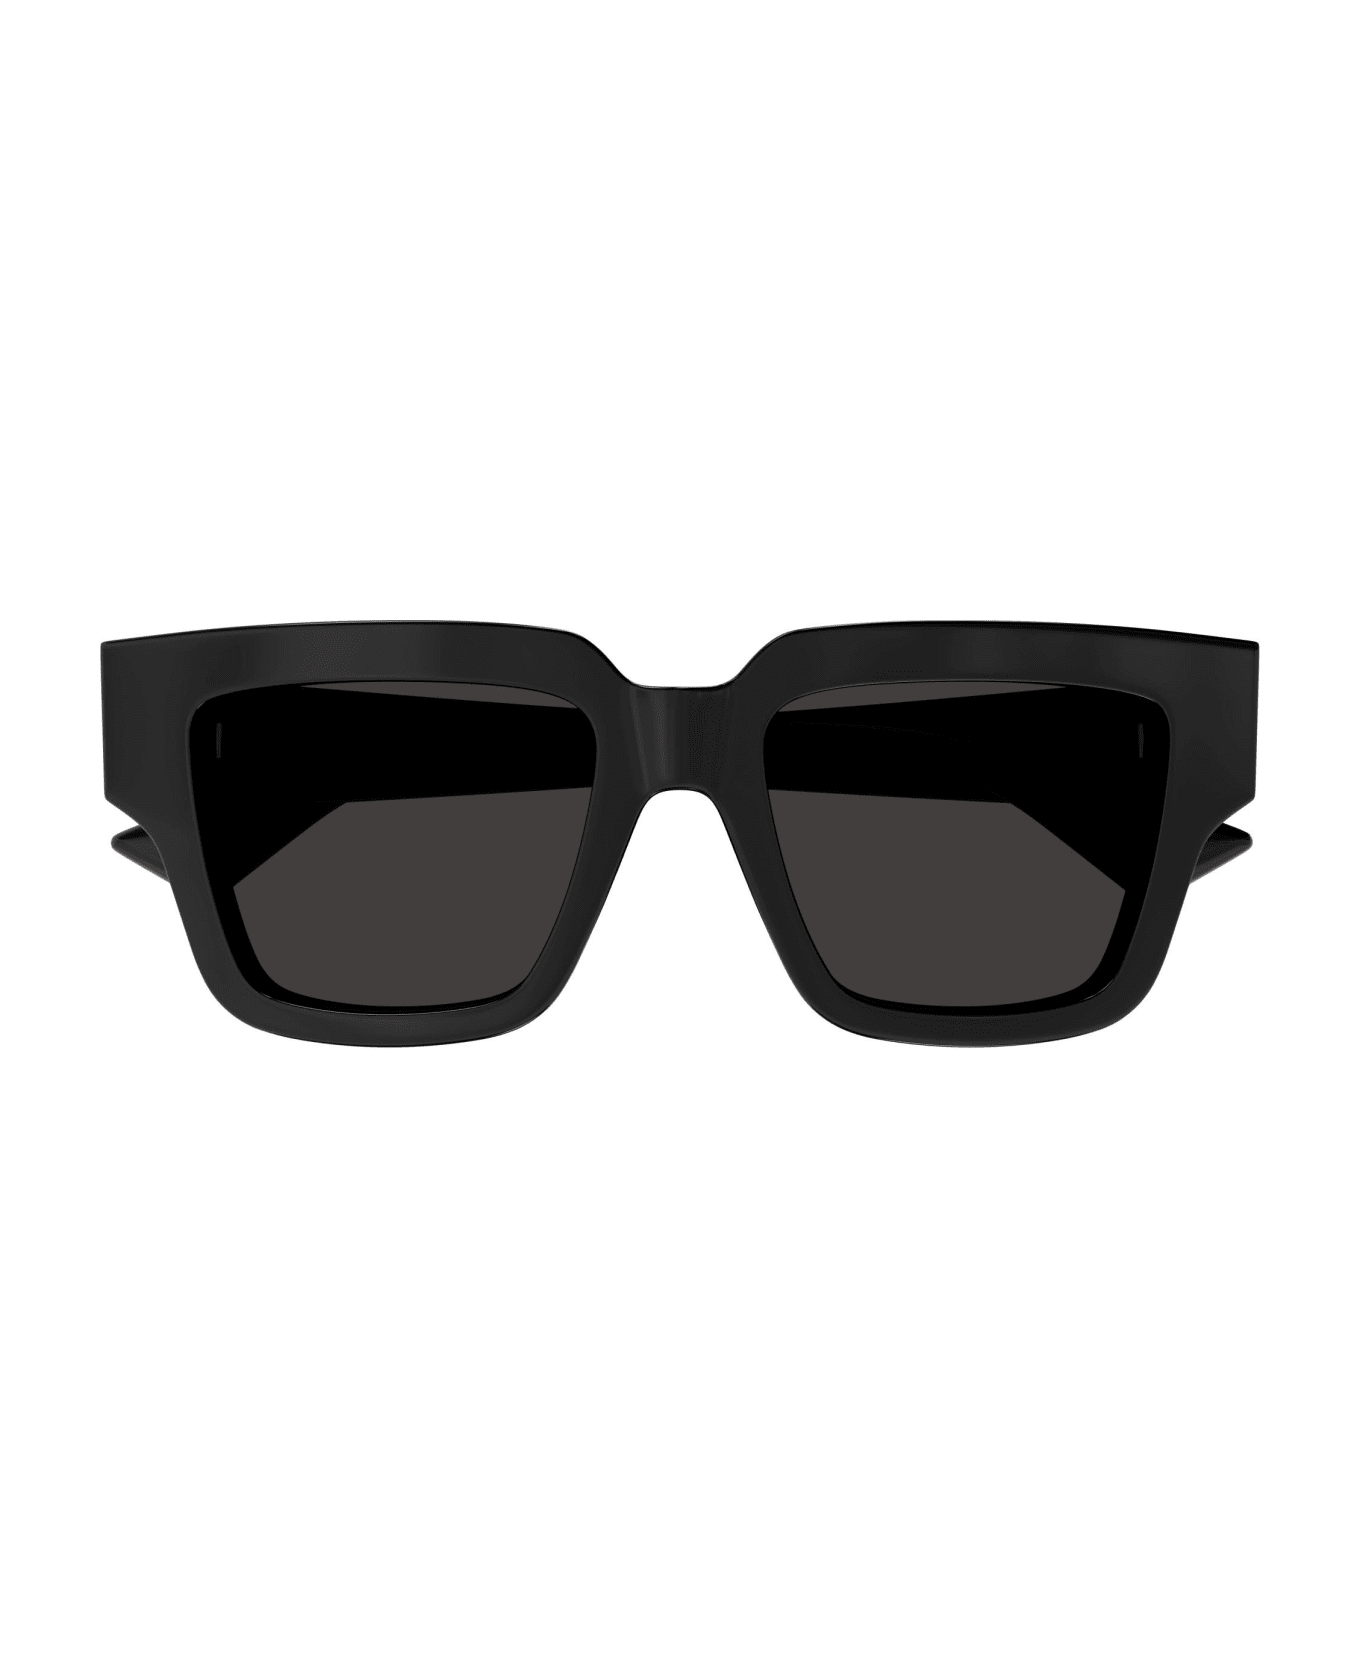 Bottega Veneta Eyewear Sunglasses - Nero/Grigio